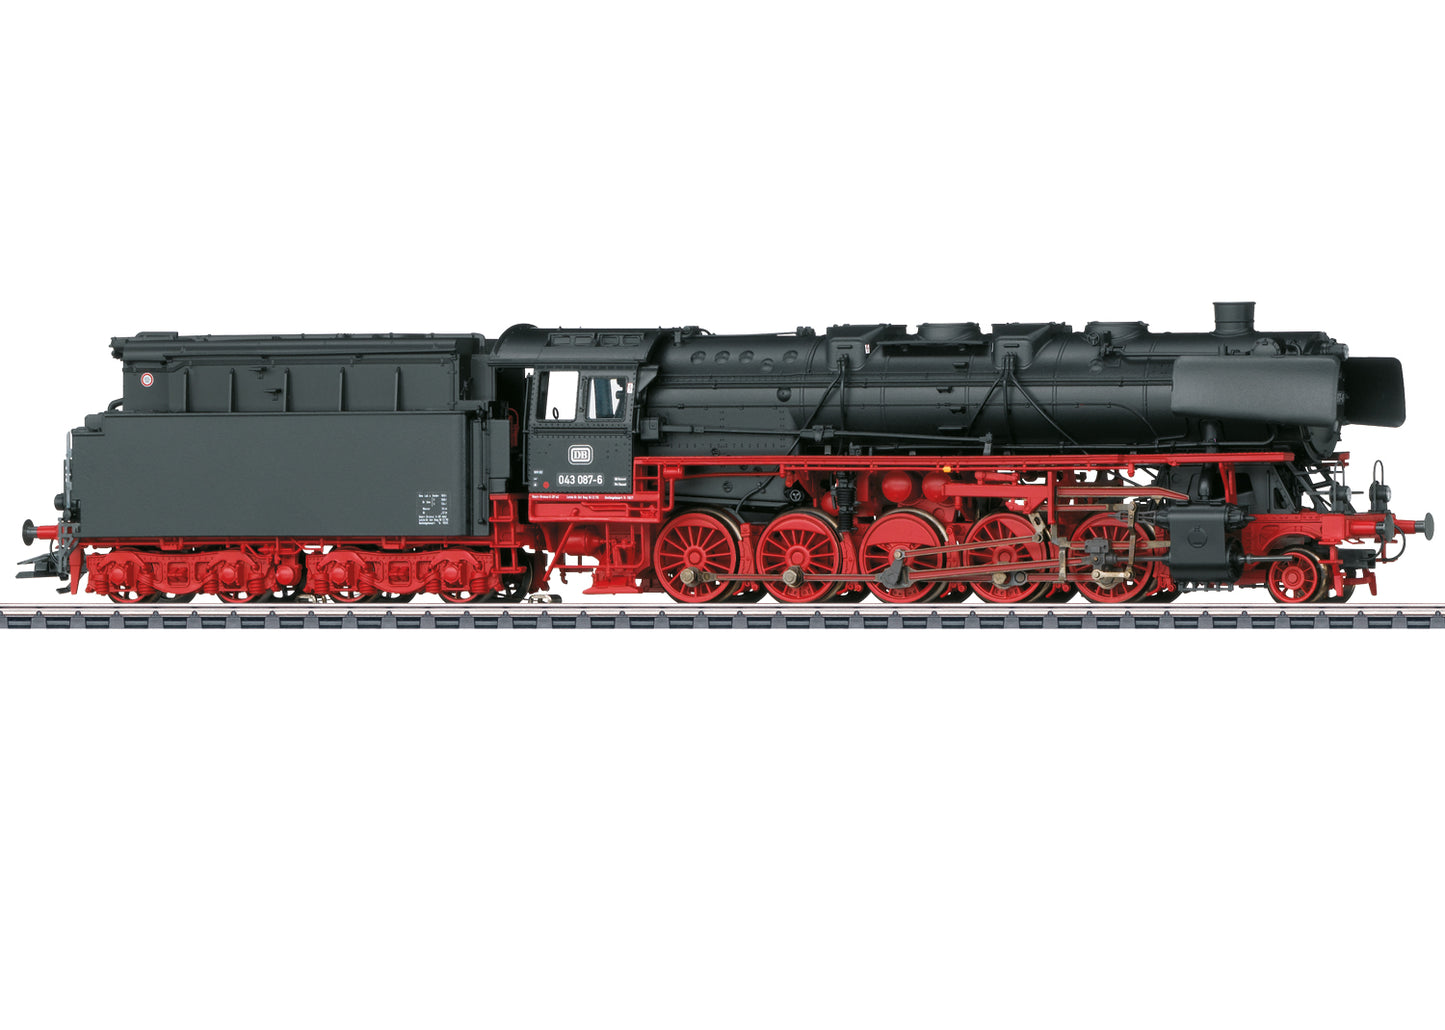 Marklin HO 39884 Güterzug Steam Locomotive BR 043 Öl, DB,IV, m.S. 2021 New Item